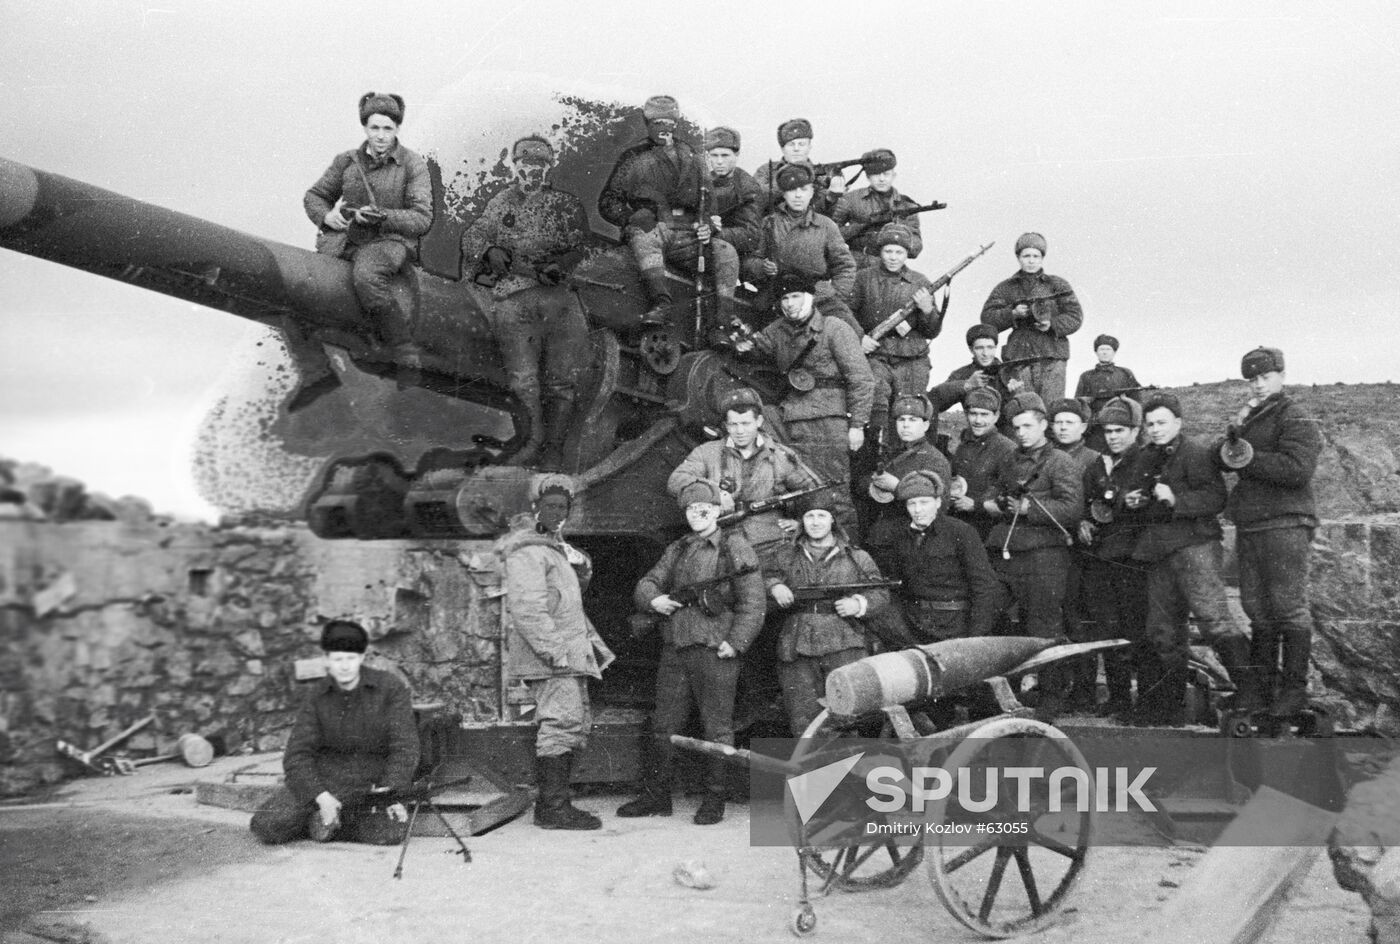 SOVIET SOLDIERS SECOND WORLD WAR